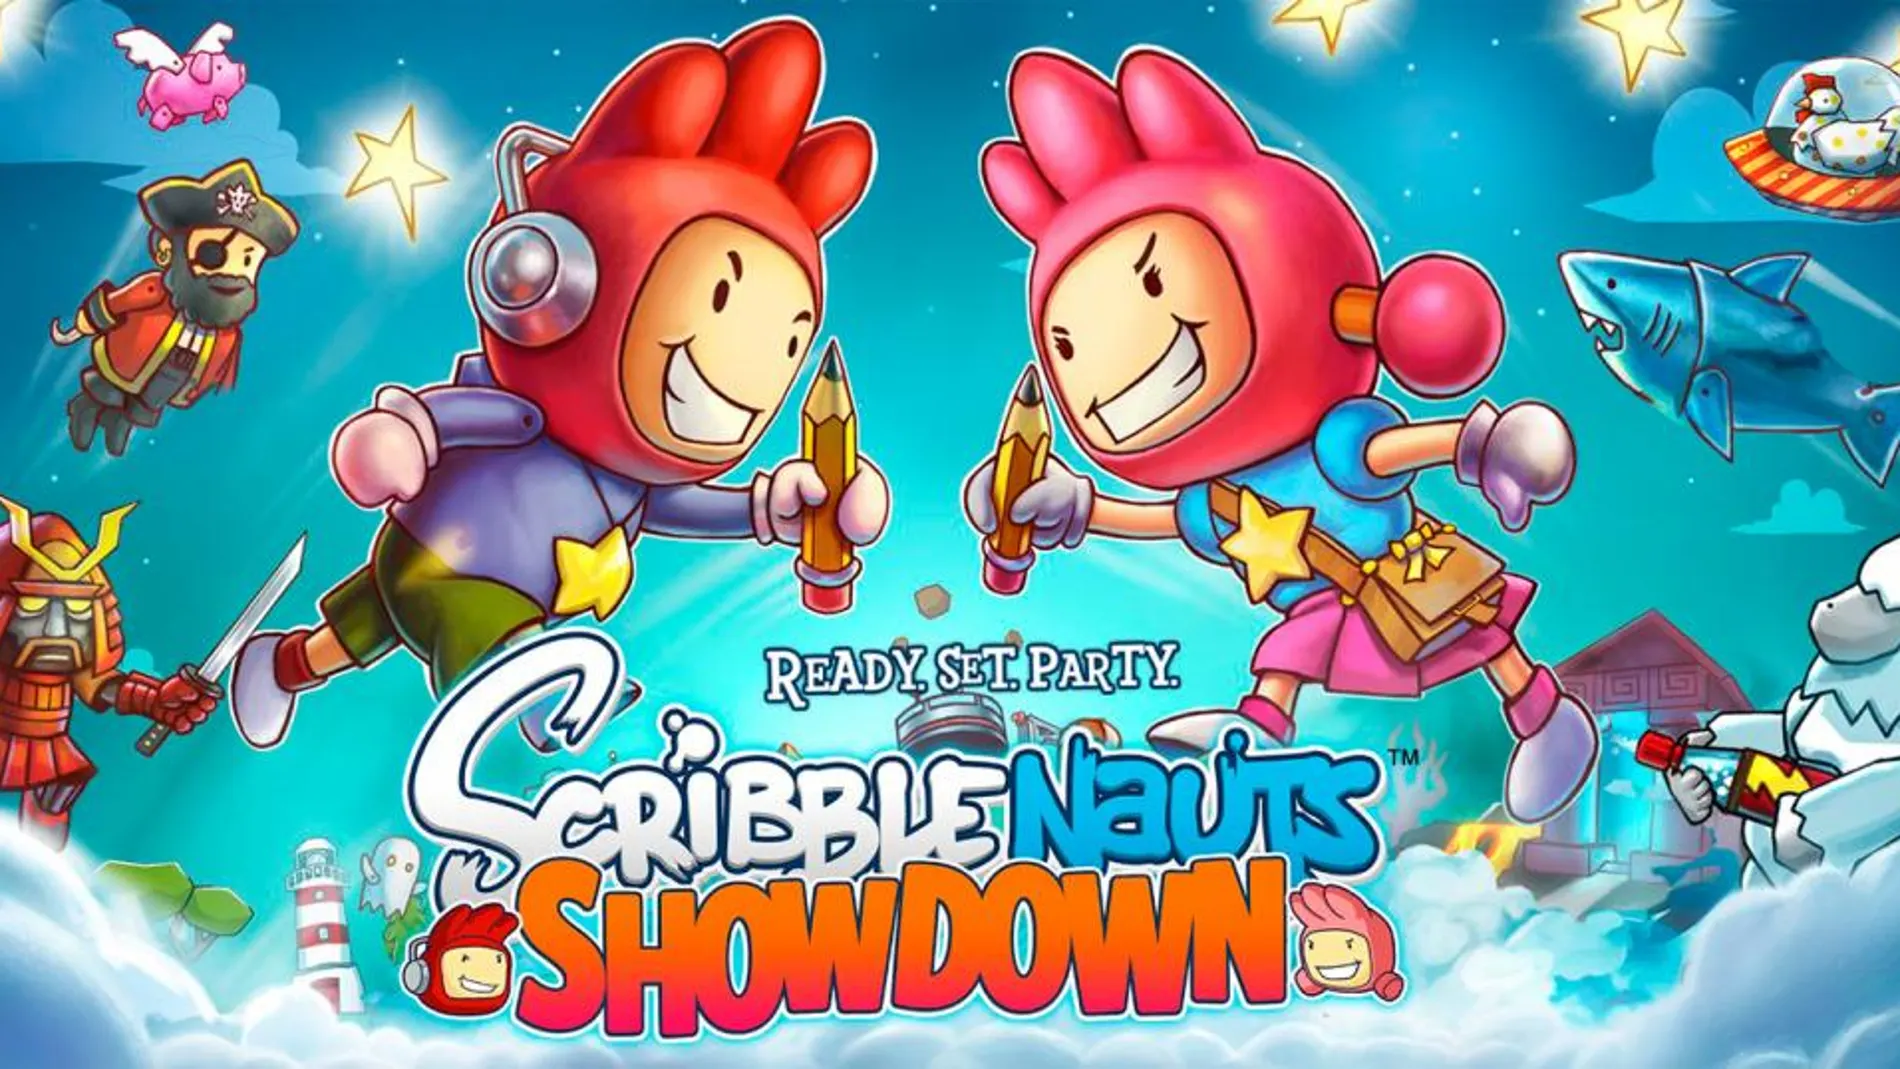 Descubre Scribblenauts Showdown, un nuevo juego de la serie para Switch, PS4 y Xbox One